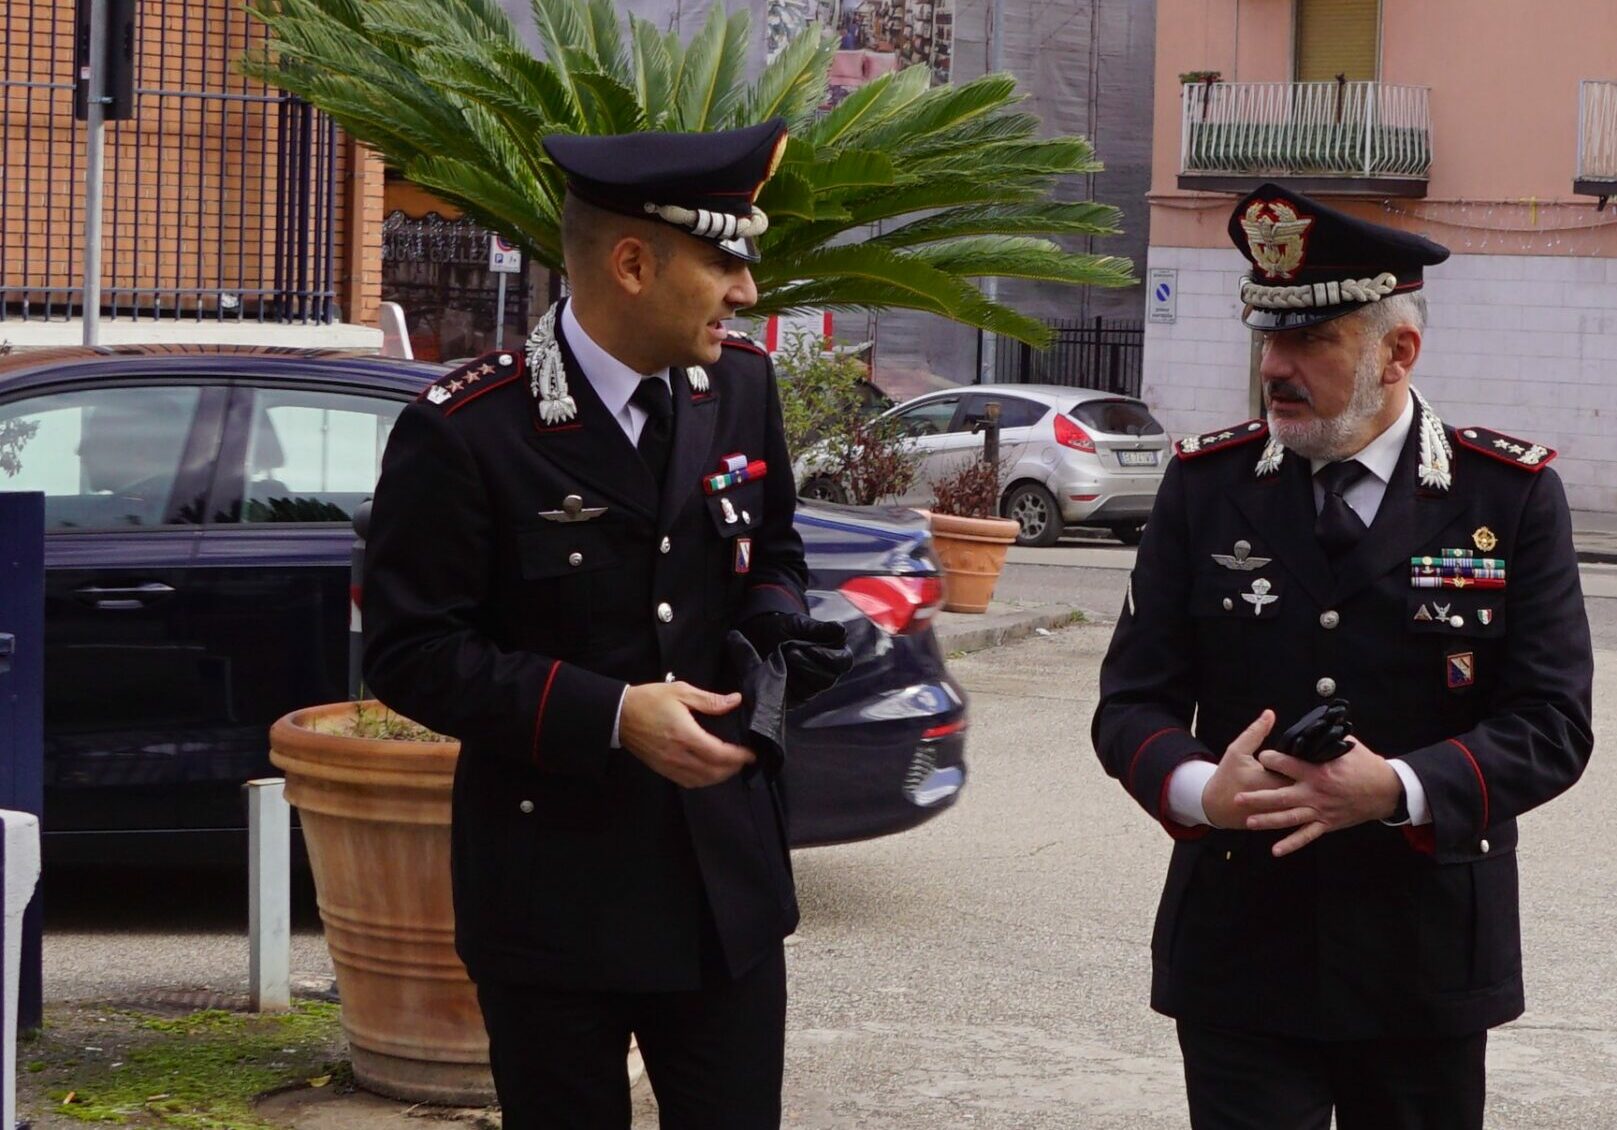 Il Comandante della Legione Carabinieri “Campania” in visita al Comando Provinciale di Benevento